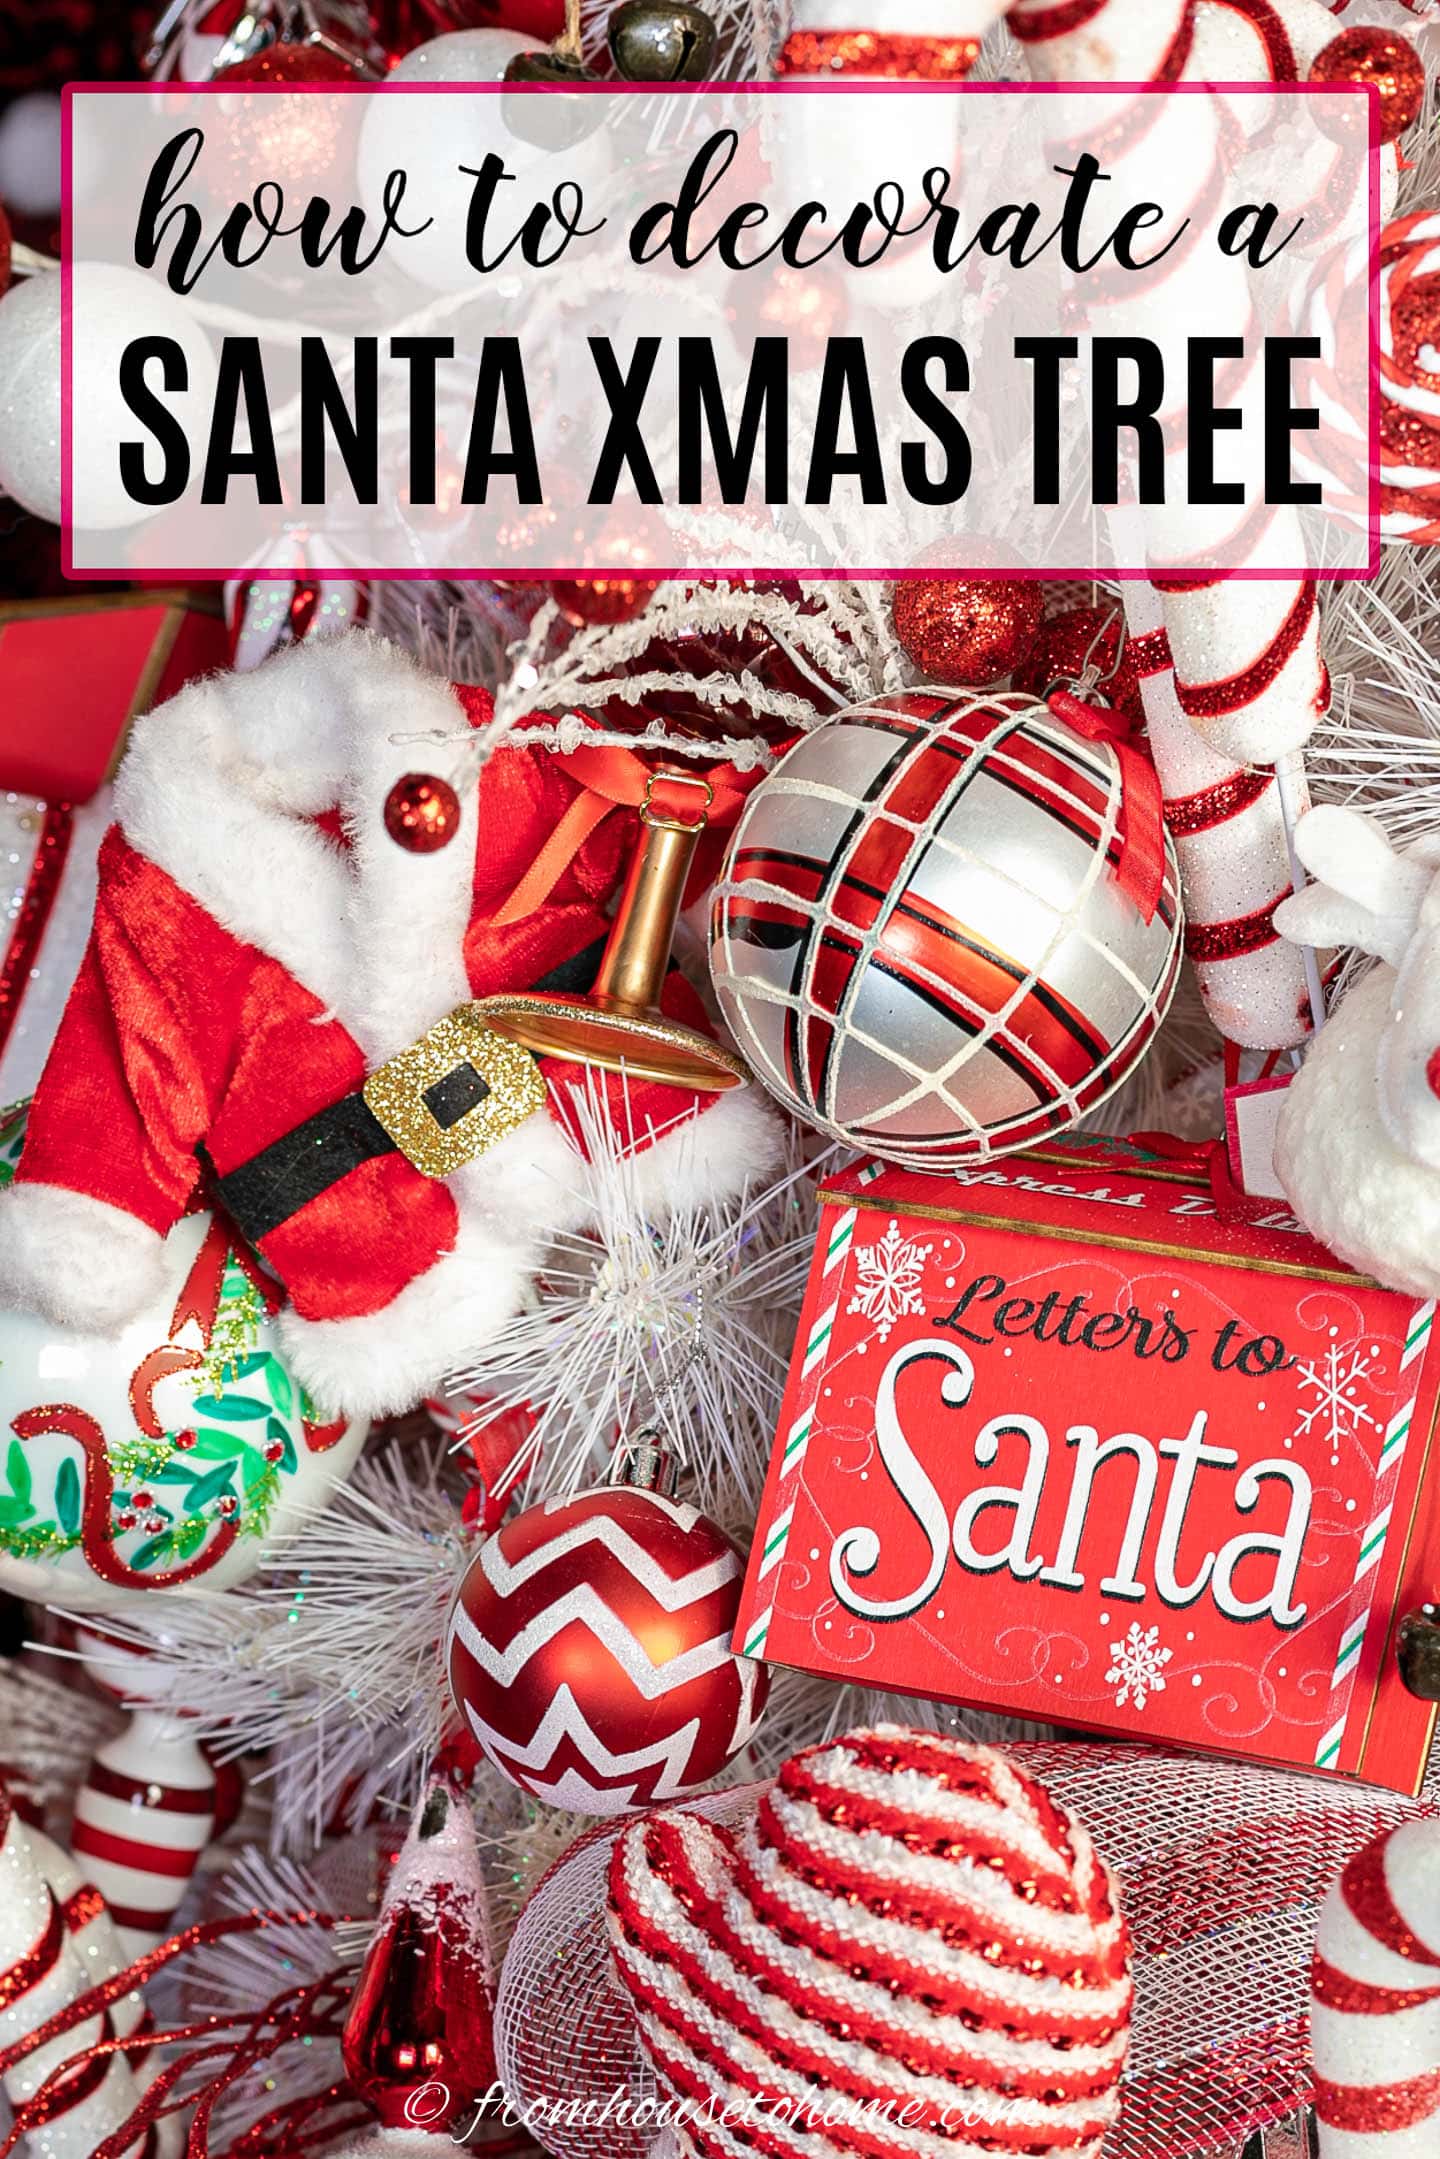 How to decorate a Santa Xmas tree